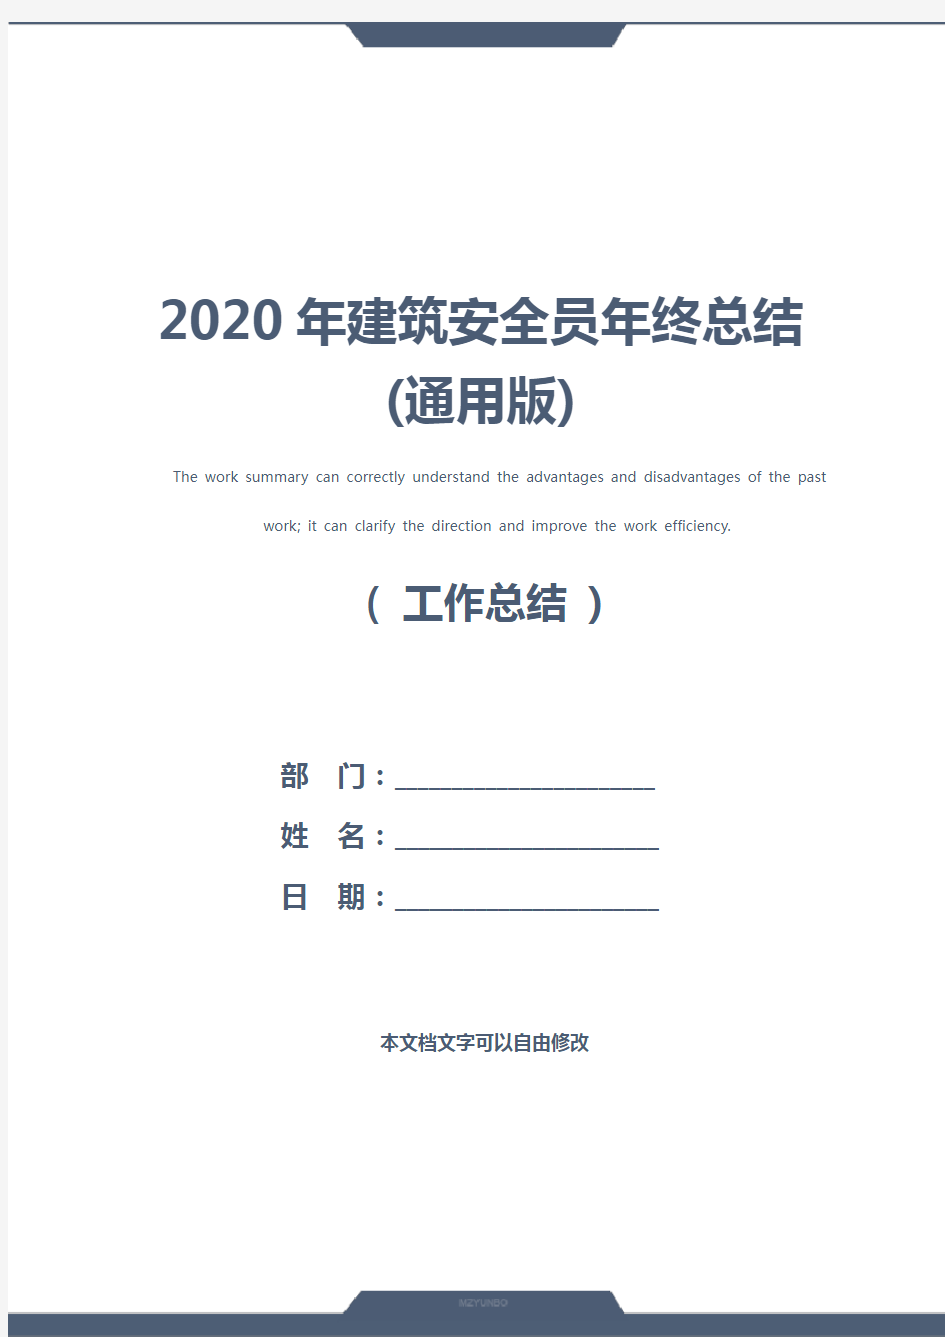 2020年建筑安全员年终总结(通用版)